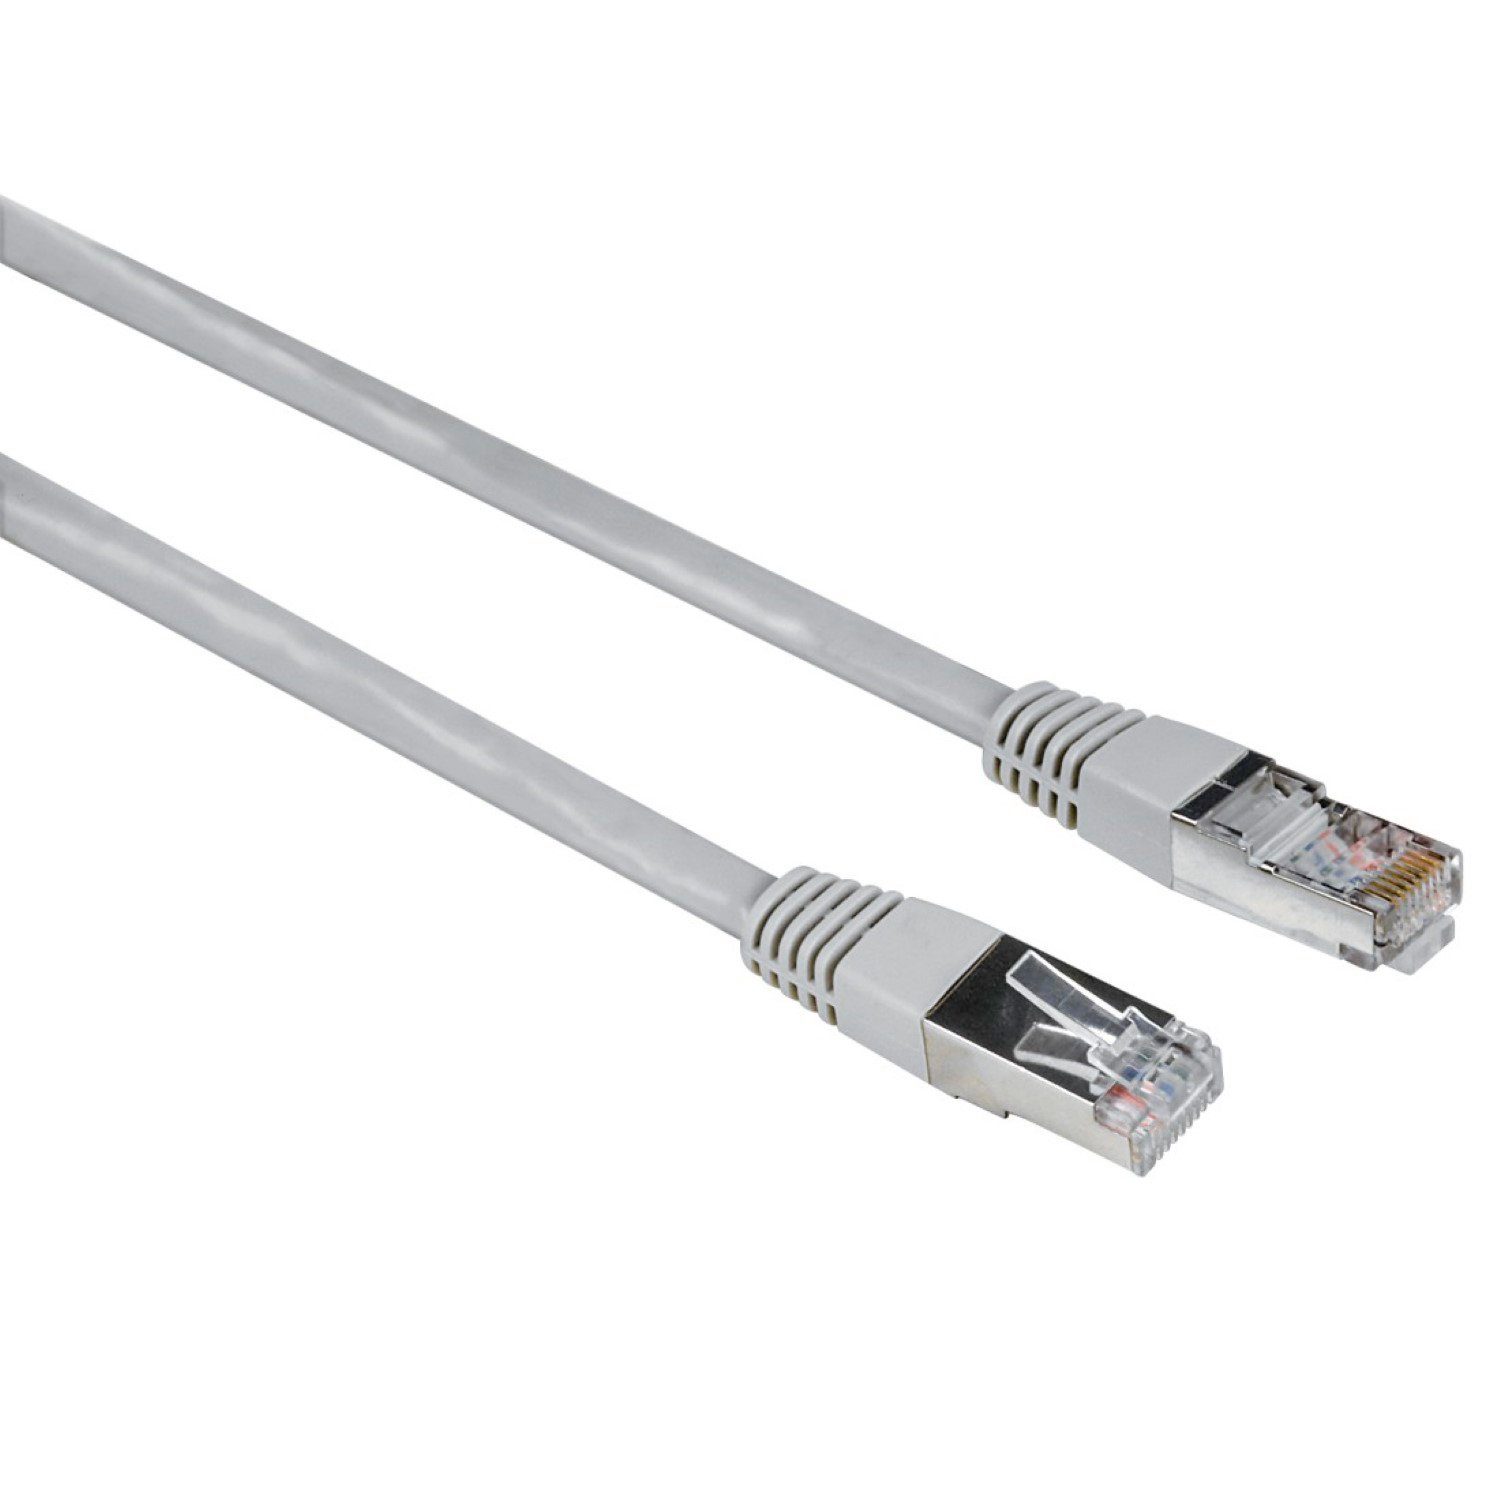 Hama 1,5m Netzwerk-Kabel Cat5e STP Lan-Kabel LAN-Kabel, RJ45, Kein, Patch-Kabel Cat 5e Gigabit Ethernet